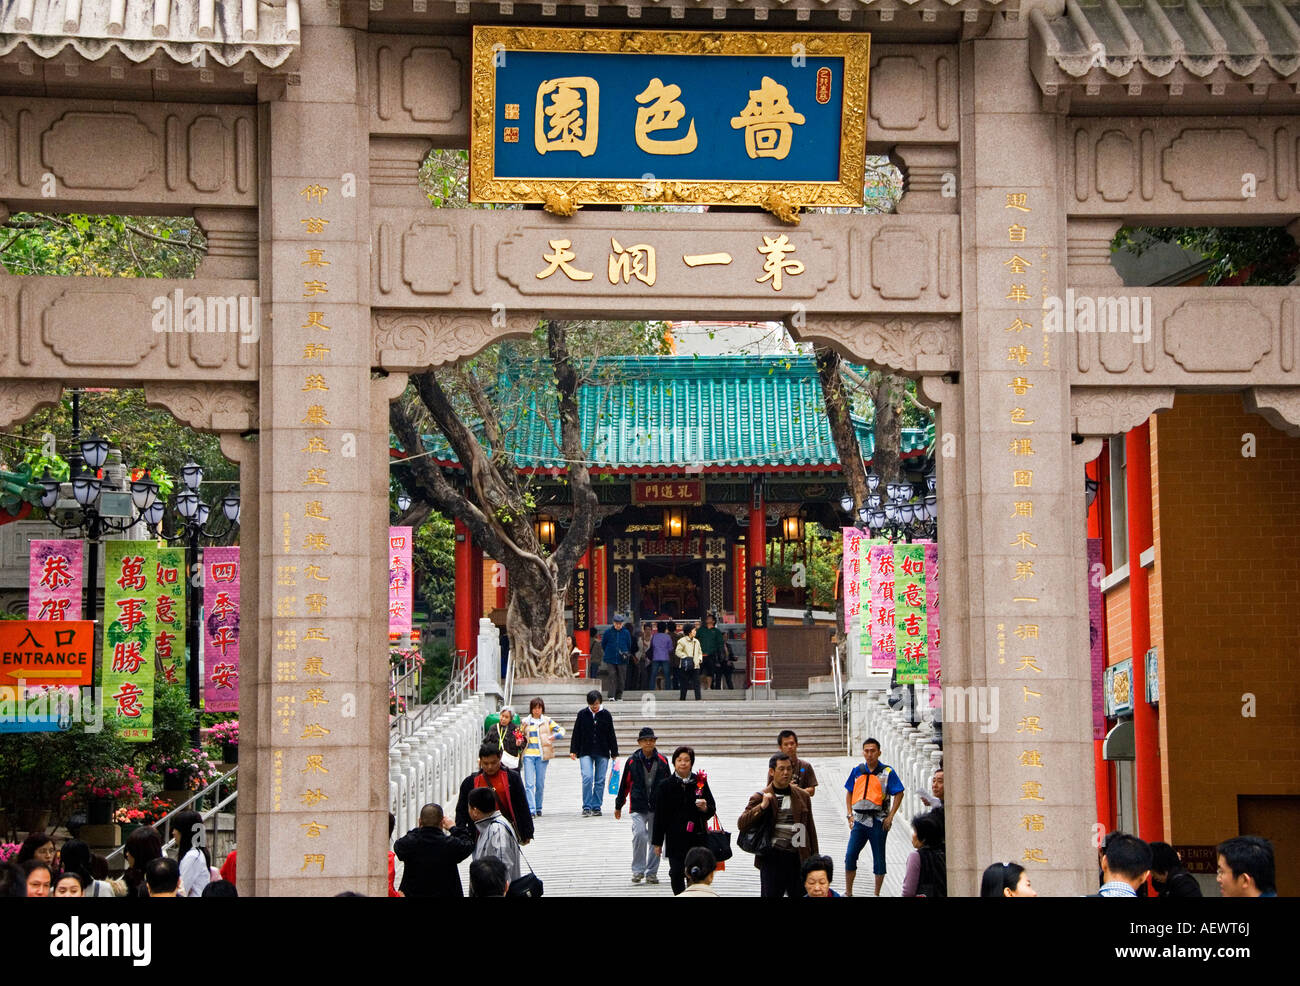 Entrance to the Wong Tai Sin Temple, Kowloon, Hong Kong, China Stock Photo